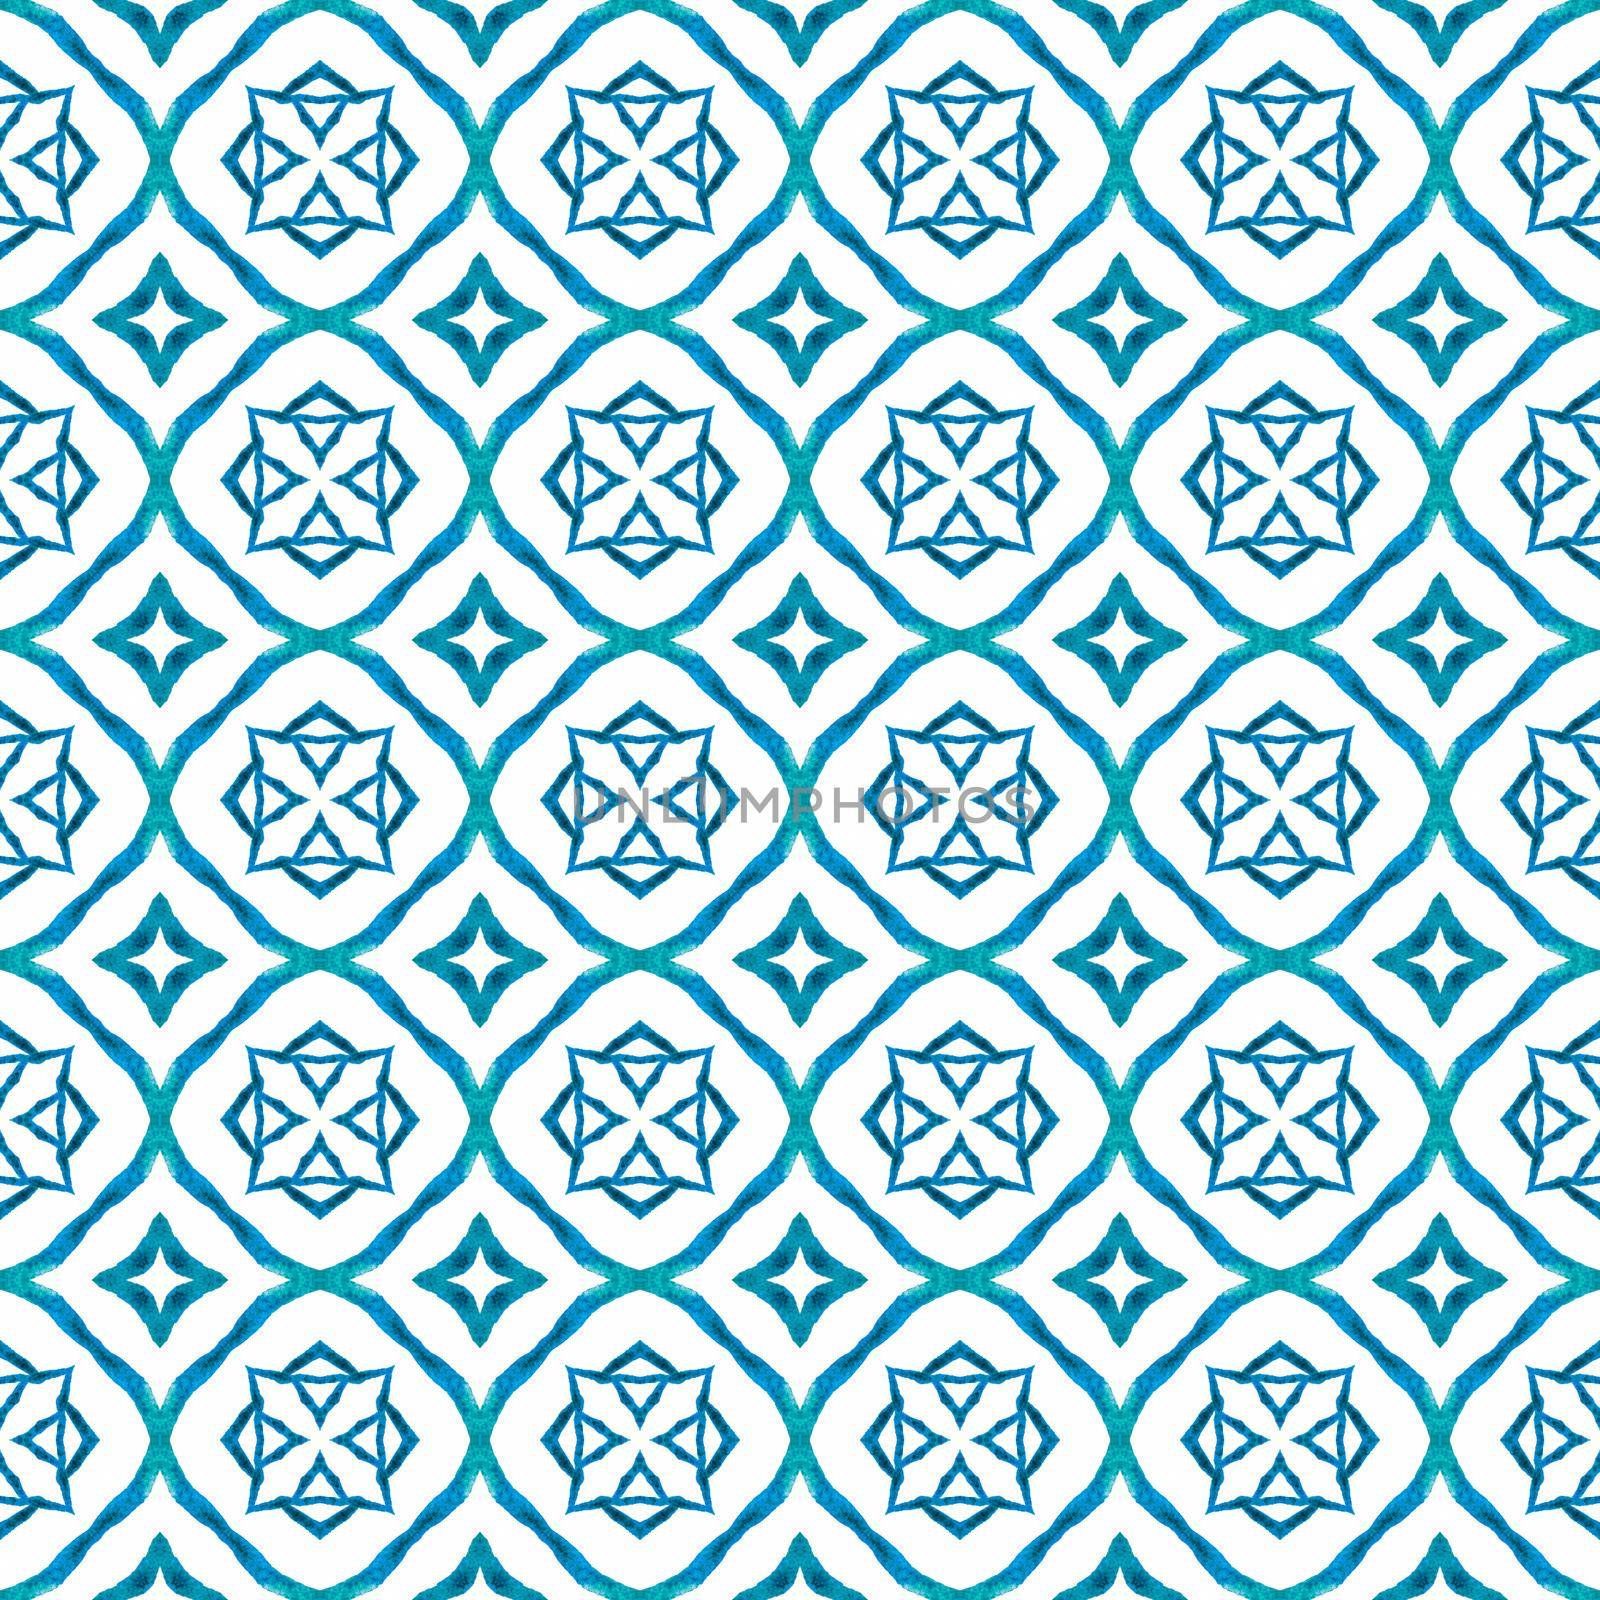 Chevron watercolor pattern. Blue uncommon boho chic summer design. Green geometric chevron watercolor border. Textile ready posh print, swimwear fabric, wallpaper, wrapping.